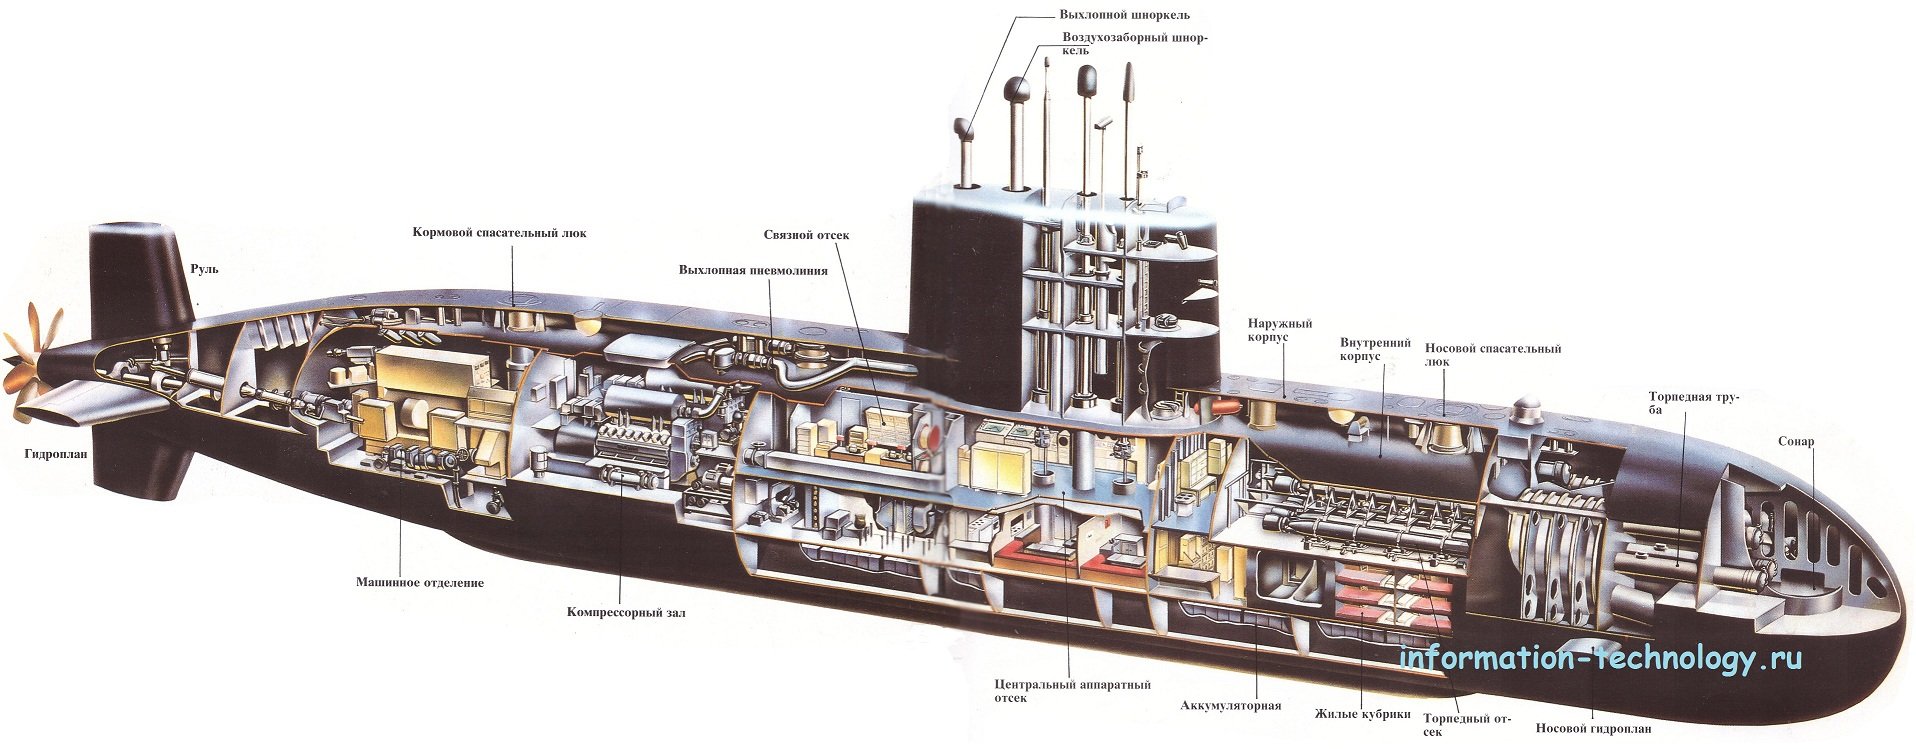 Сборка подводной лодки. Схема отсеков атомной подводной лодки «Курск». Строение подводной лодки Курск в разрезе. Атомная подводная лодка Курск в разрезе. Атомная подлодка Курск изнутри.